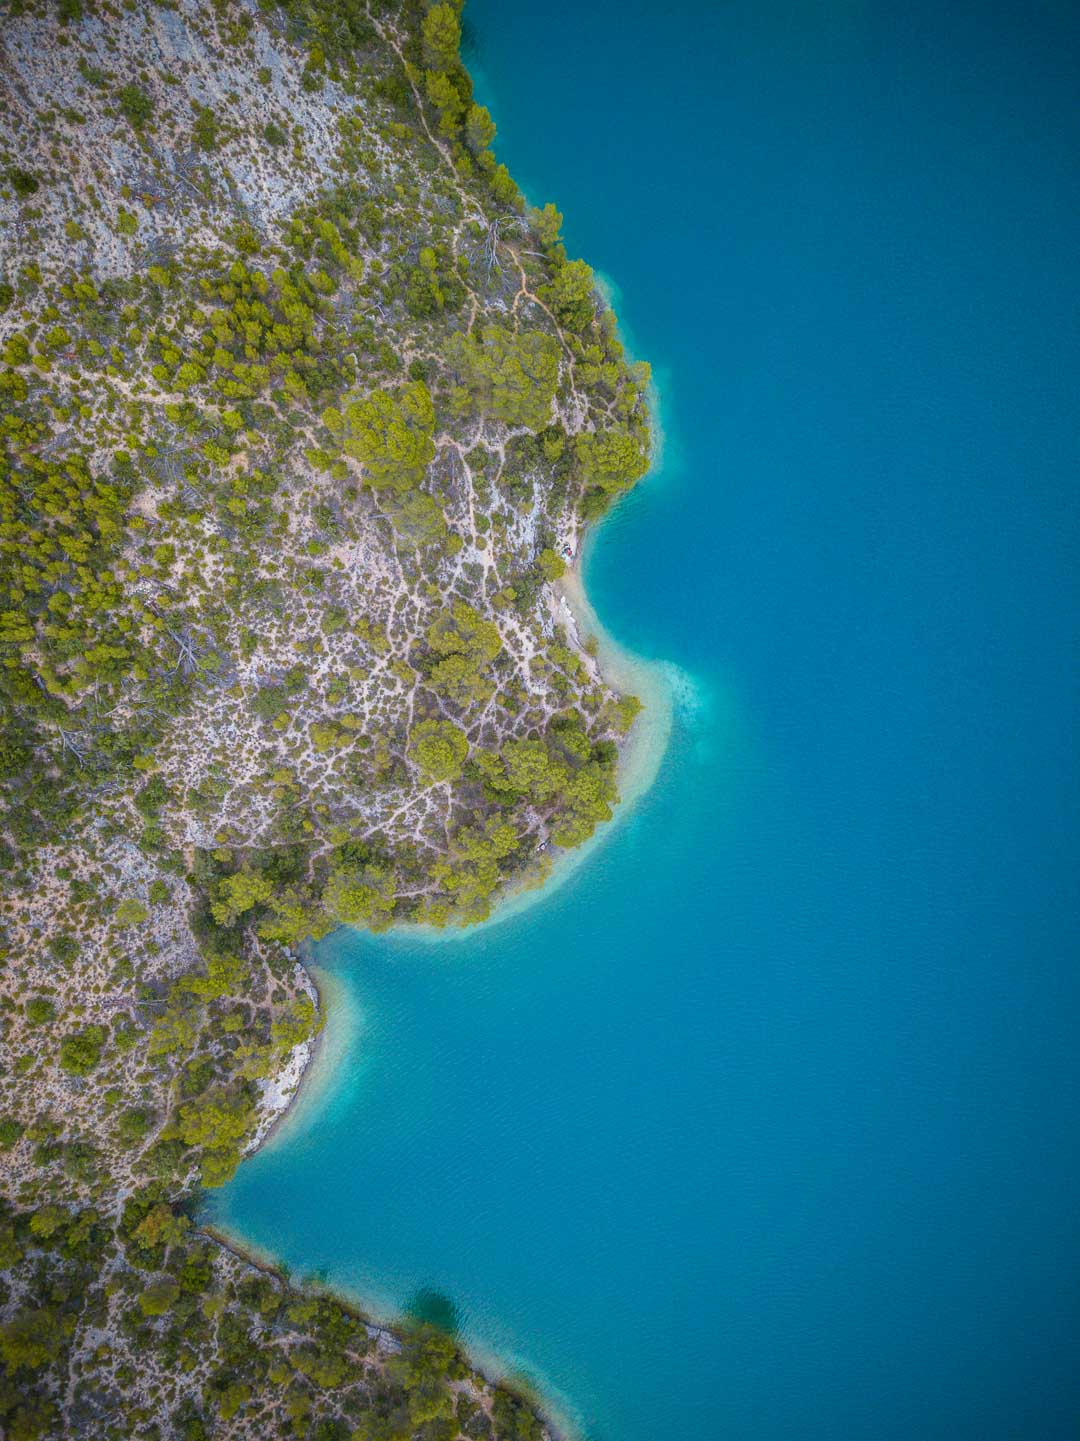 trees and blue water in lac esparron de verdon